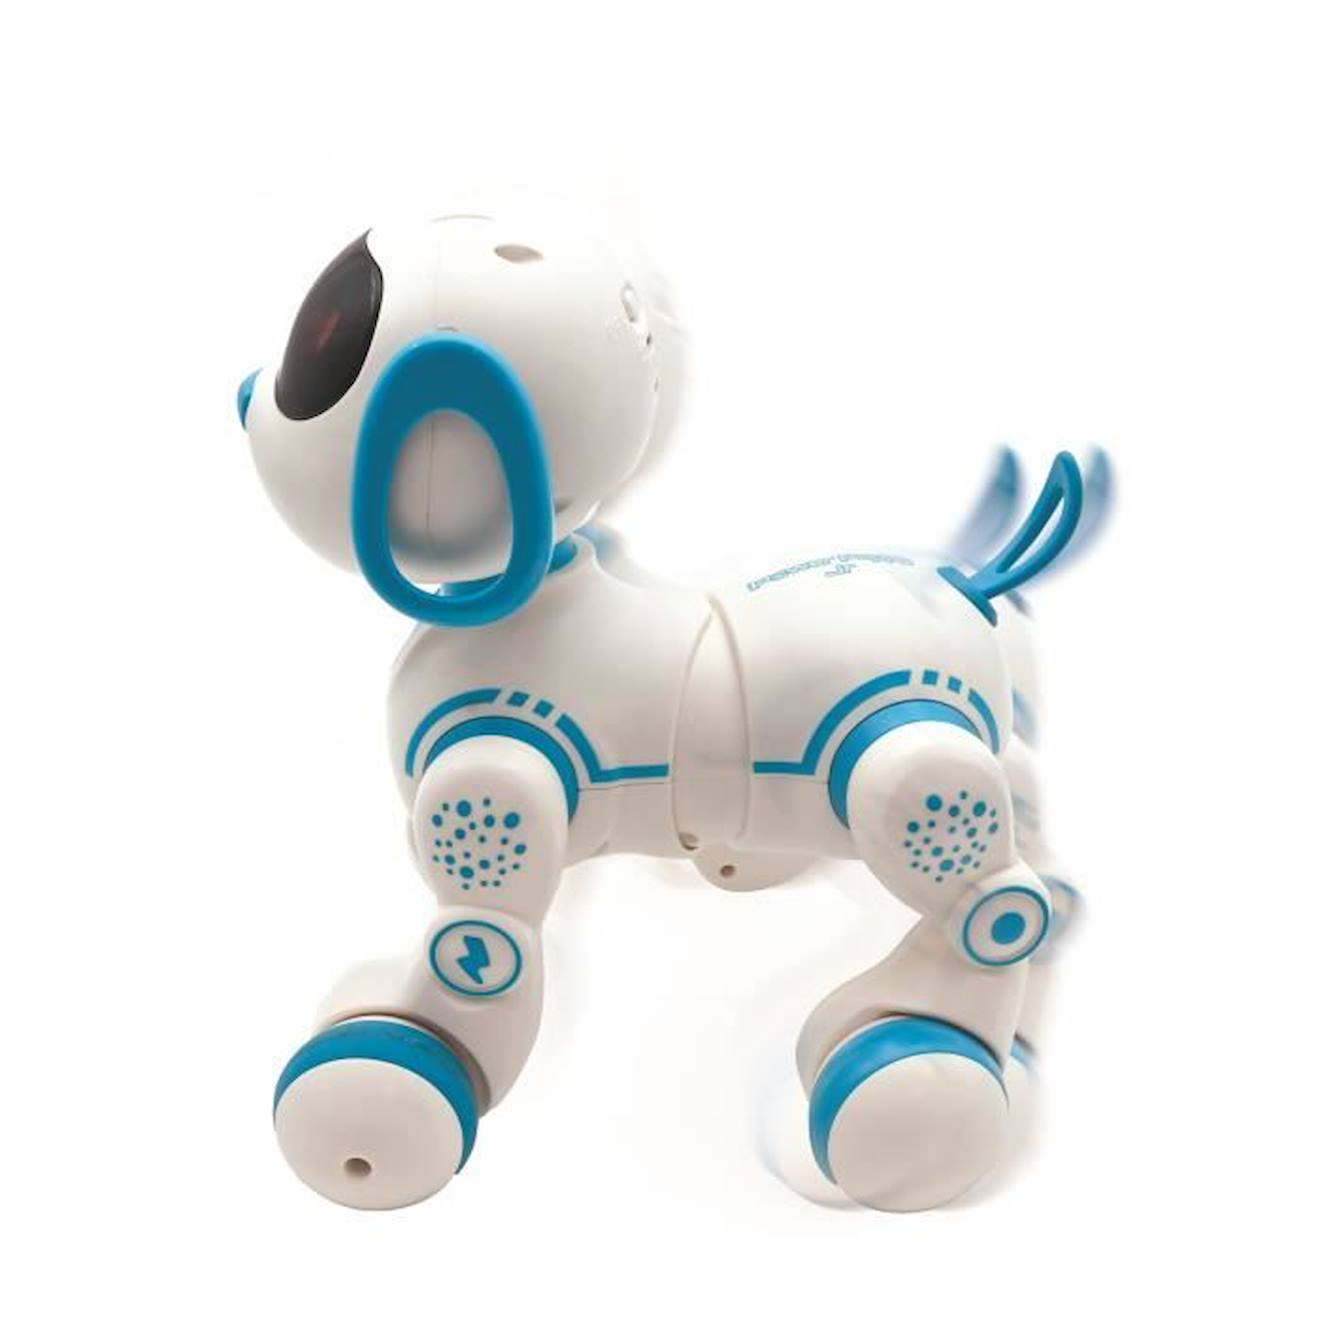 Robot chien Power Puppy Mini - Effets lumineux et sonores